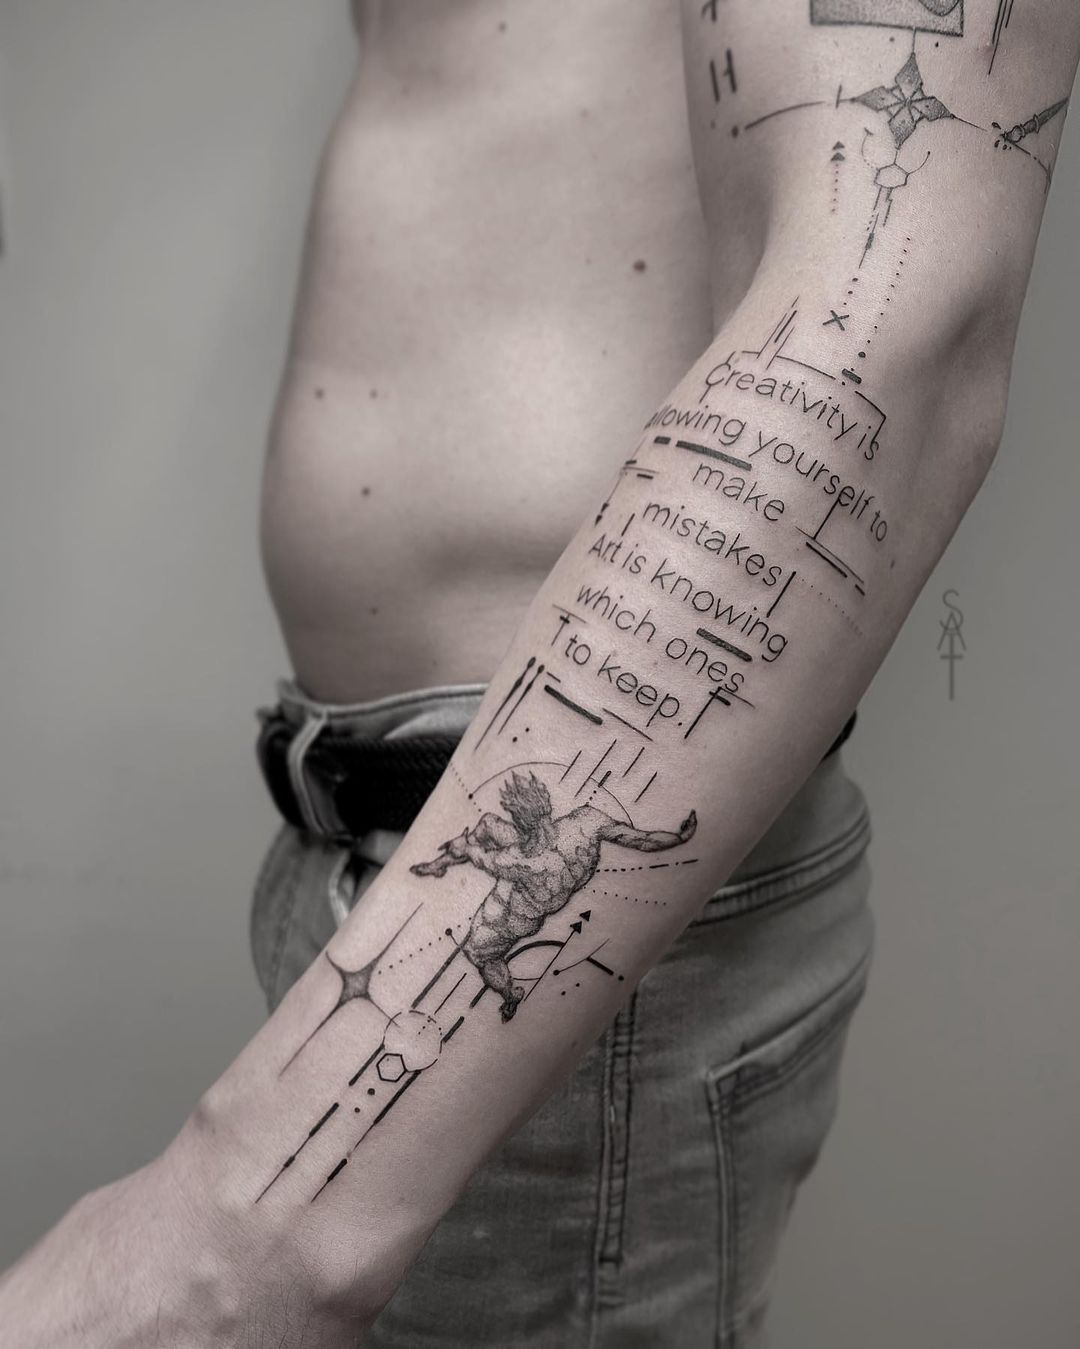 Geometric tattoo ideas by saquarius.tattoo